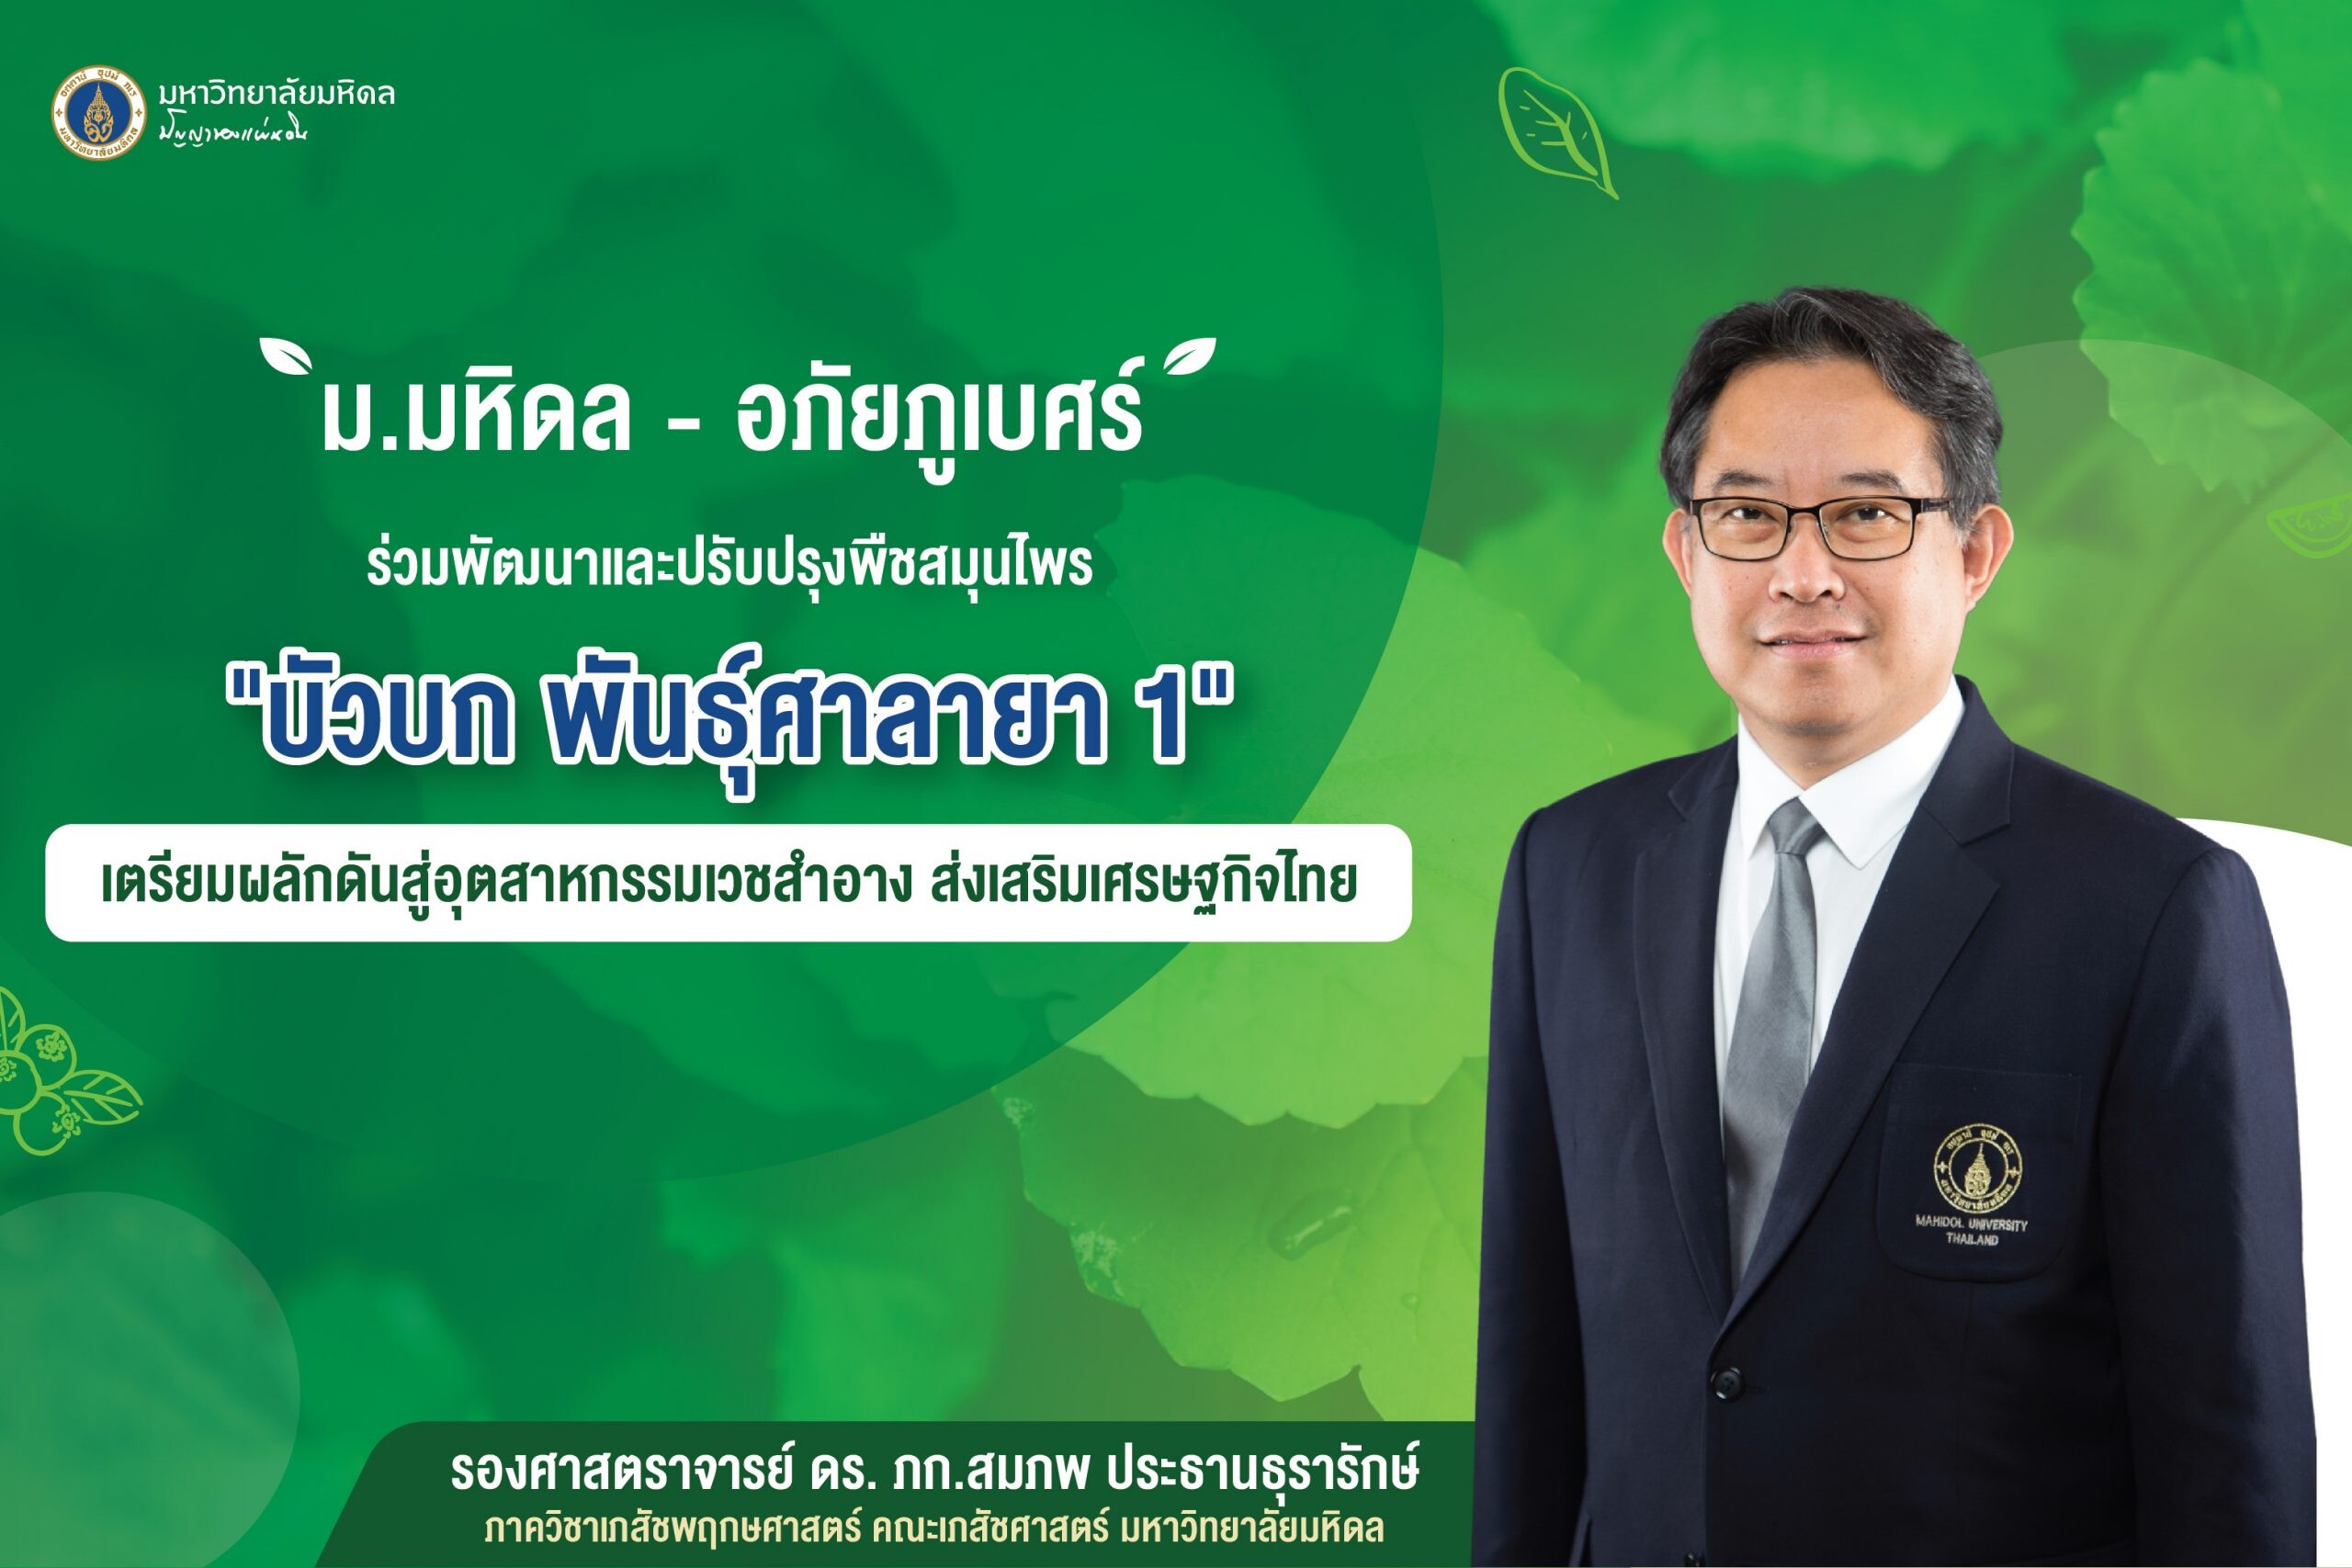 ม.มหิดล - อภัยภูเบศร ร่วมพัฒนาและปรับปรุงพืชสมุนไพร"บัวบก พันธุ์ศาลายา 1" เตรียมผลักดันสู่อุตสาหกรรมเวชสำอาง ส่งเสริมเศรษฐกิจไทย